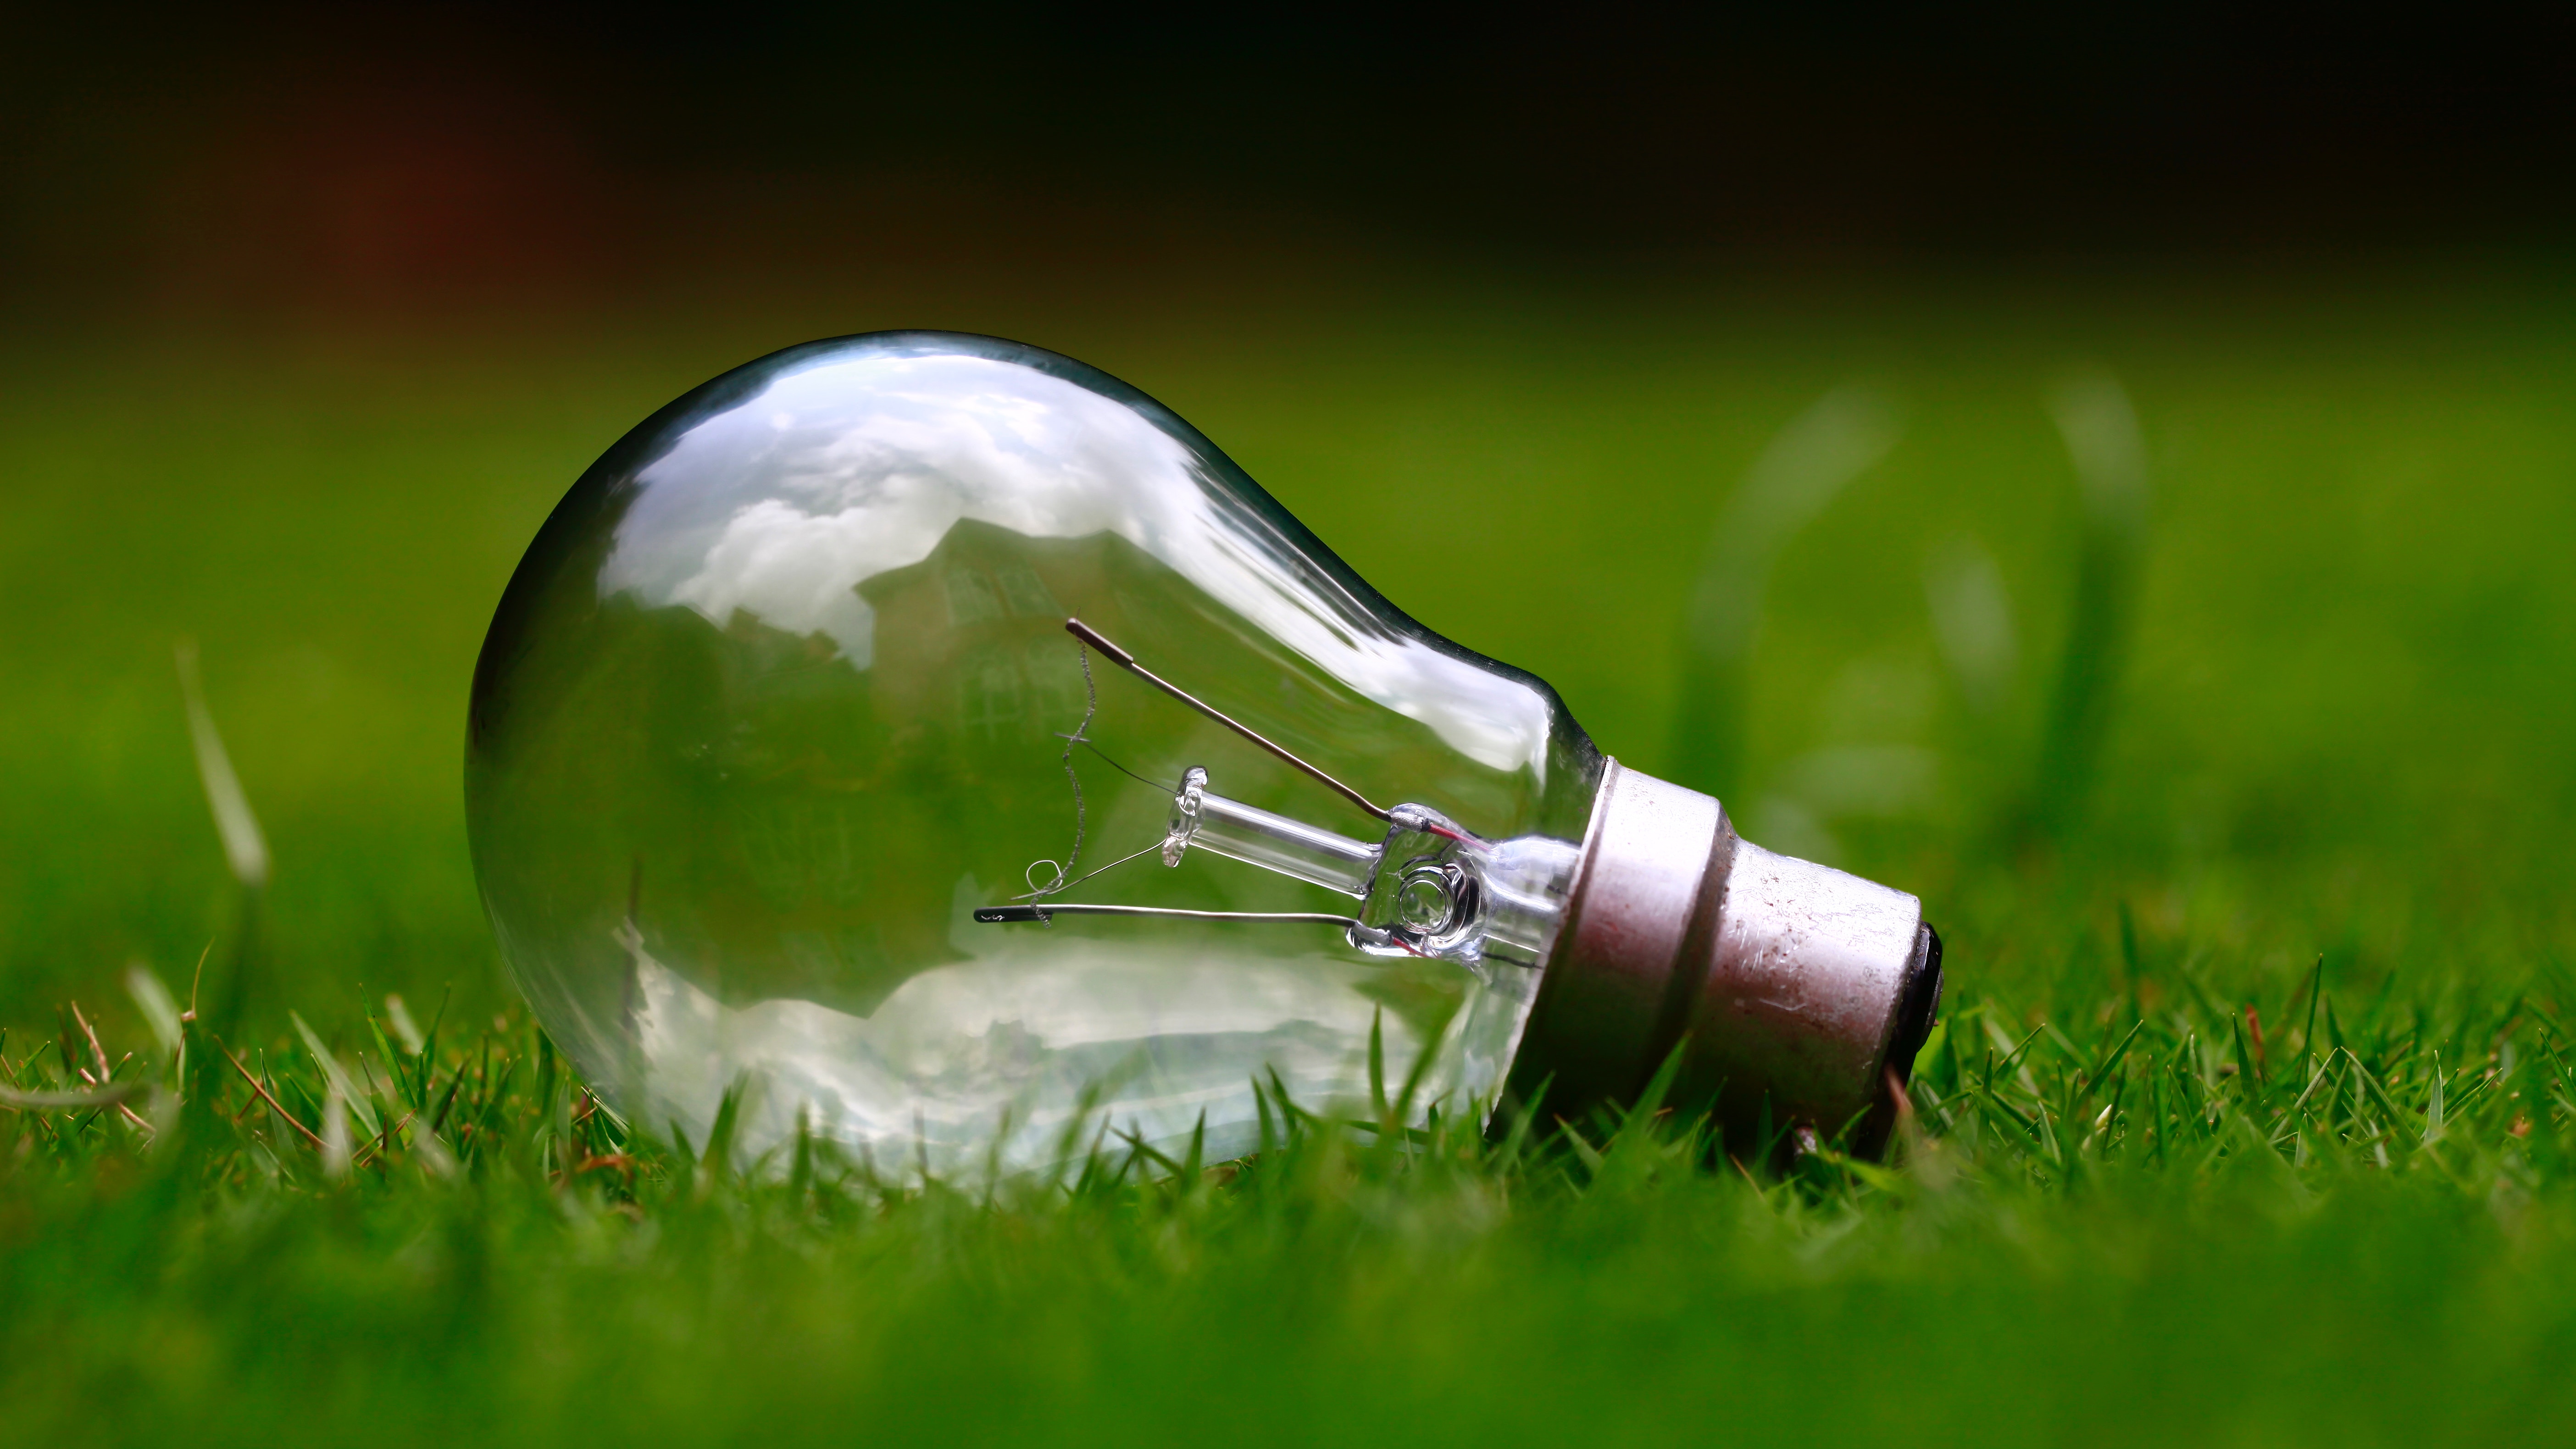 lightbulb laying in green grass